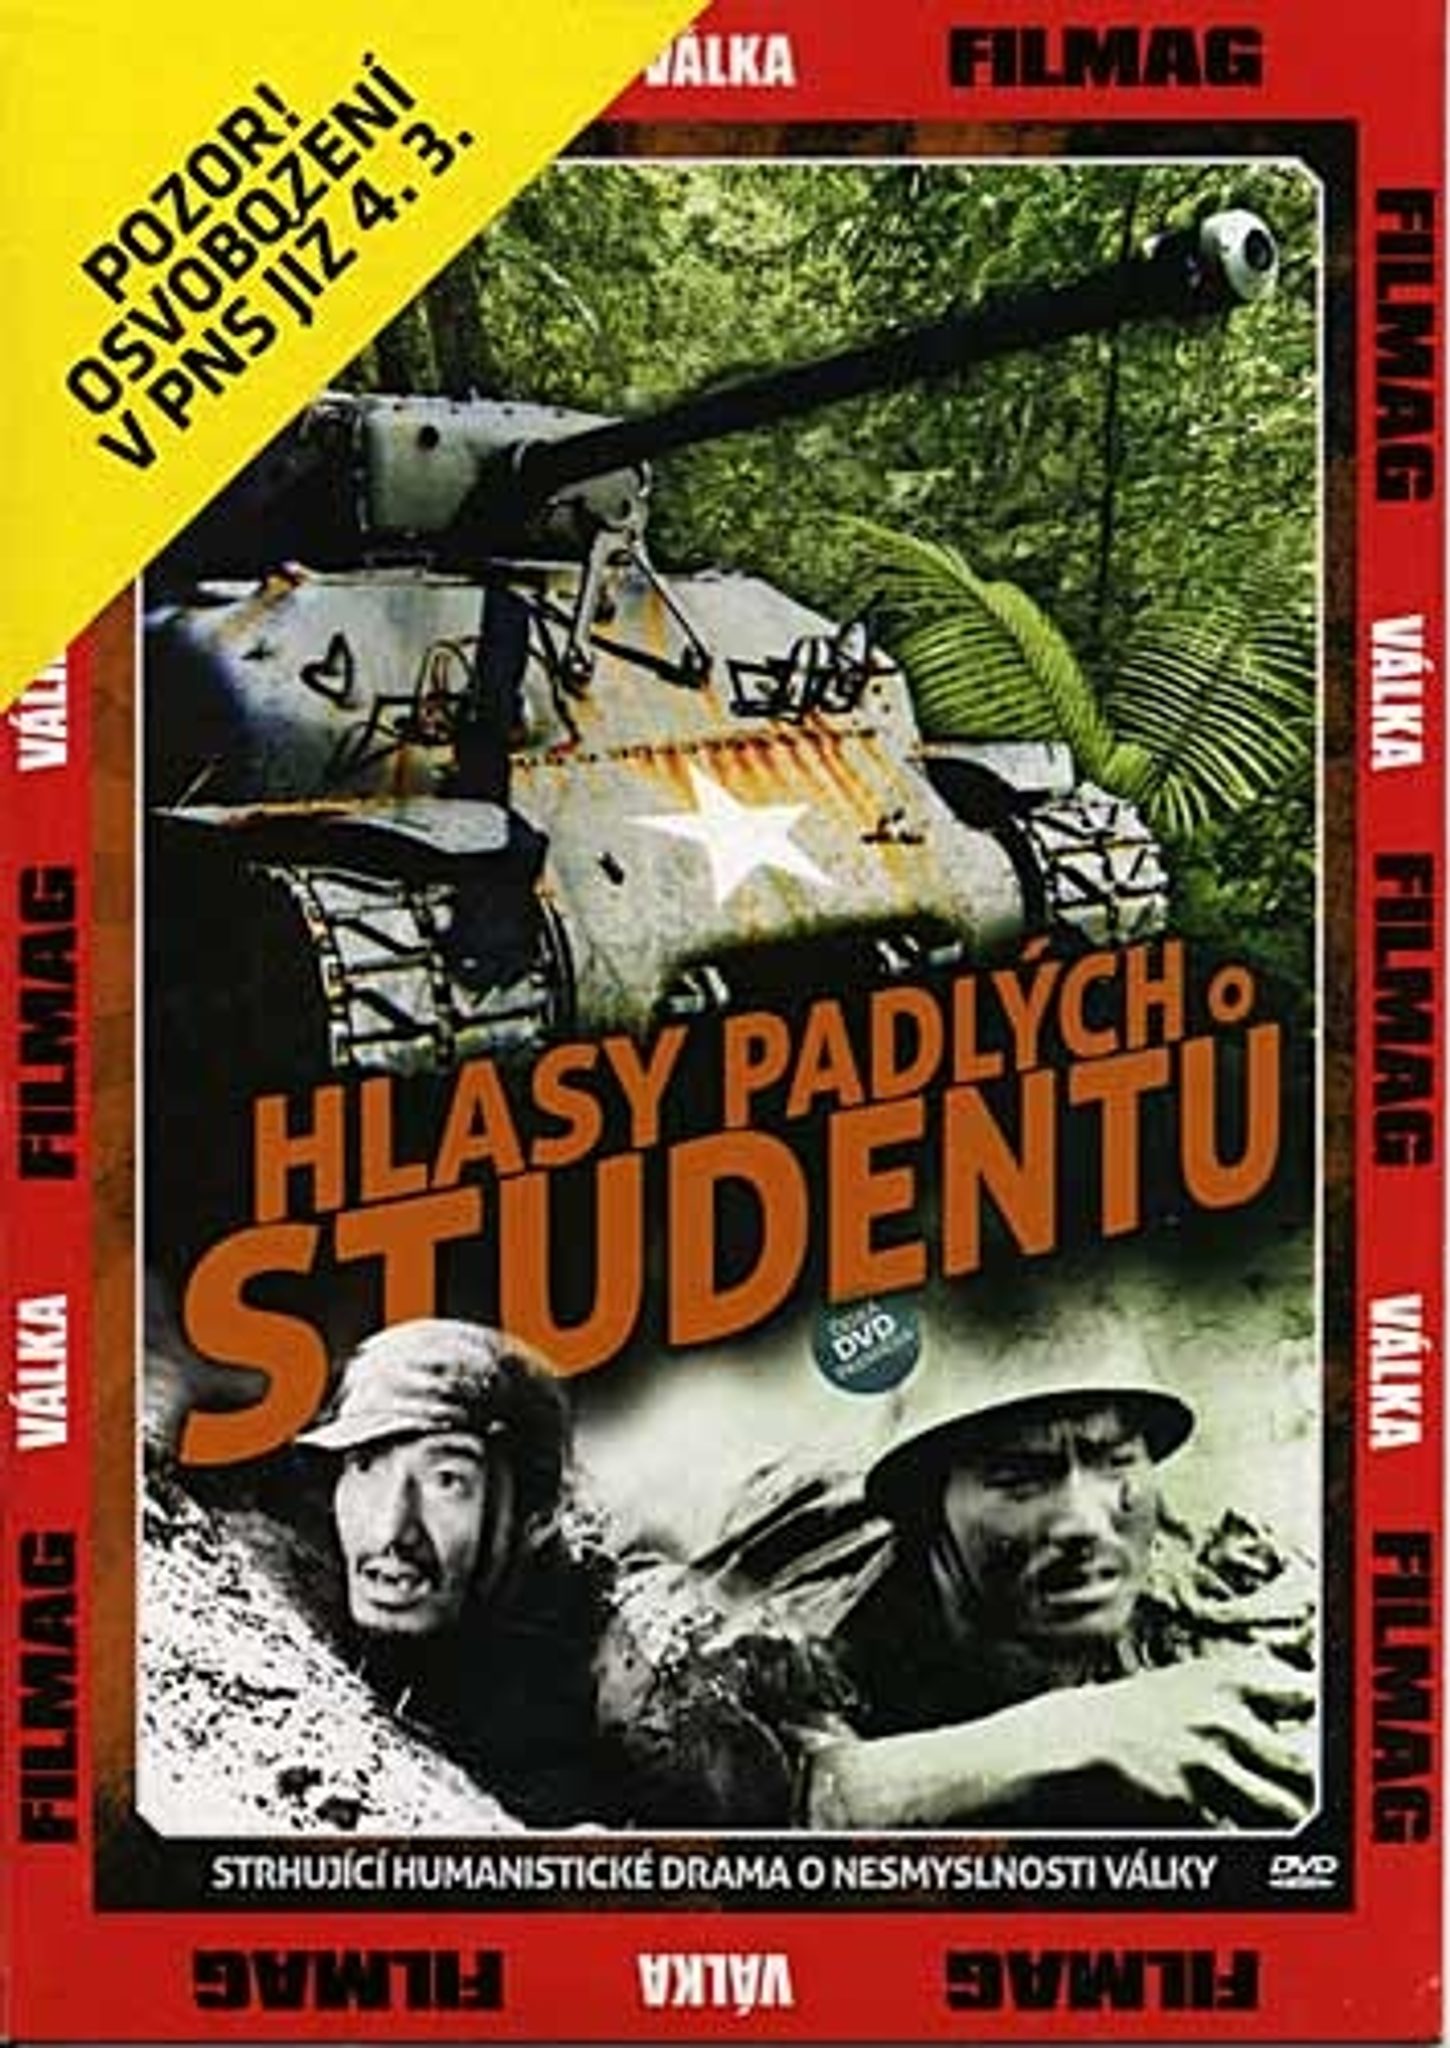 DVD Hlasy padlch student - Kliknutm na obrzek zavete